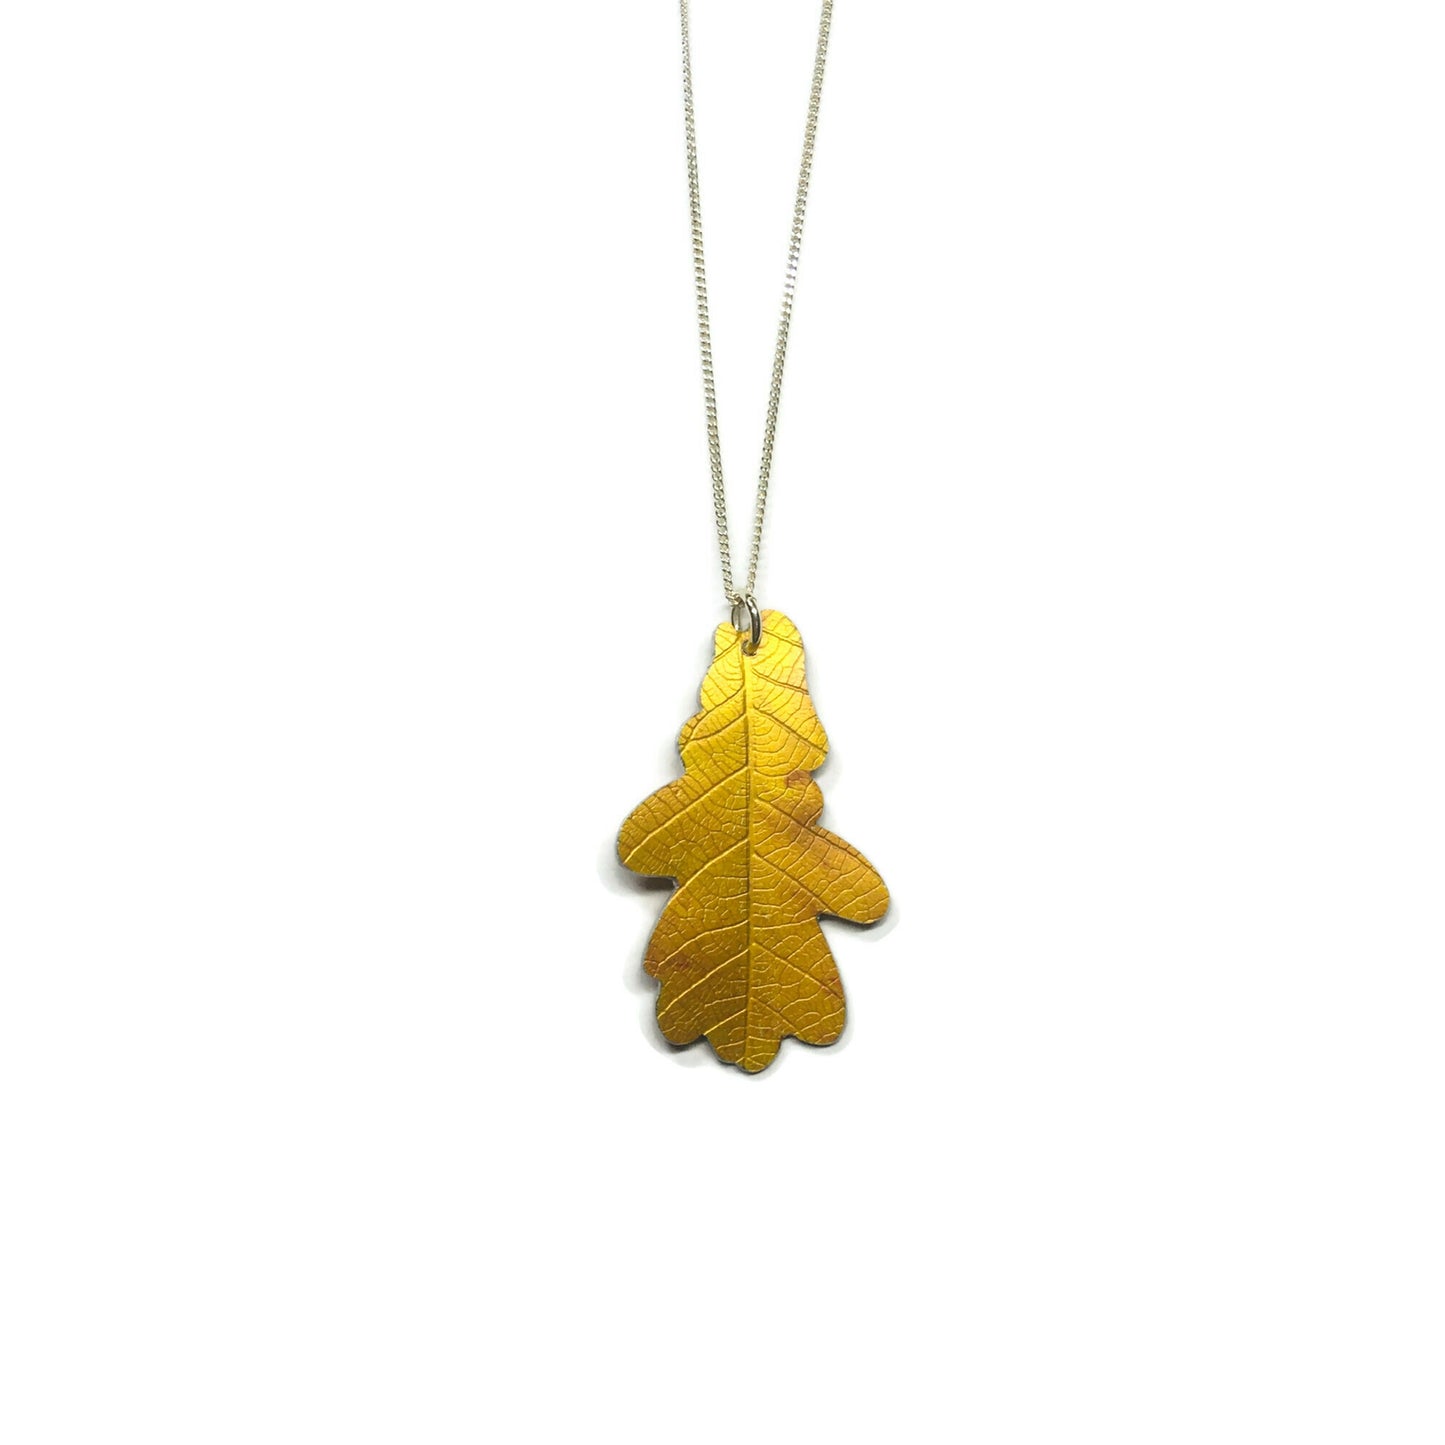 Golden Oak leaf necklace